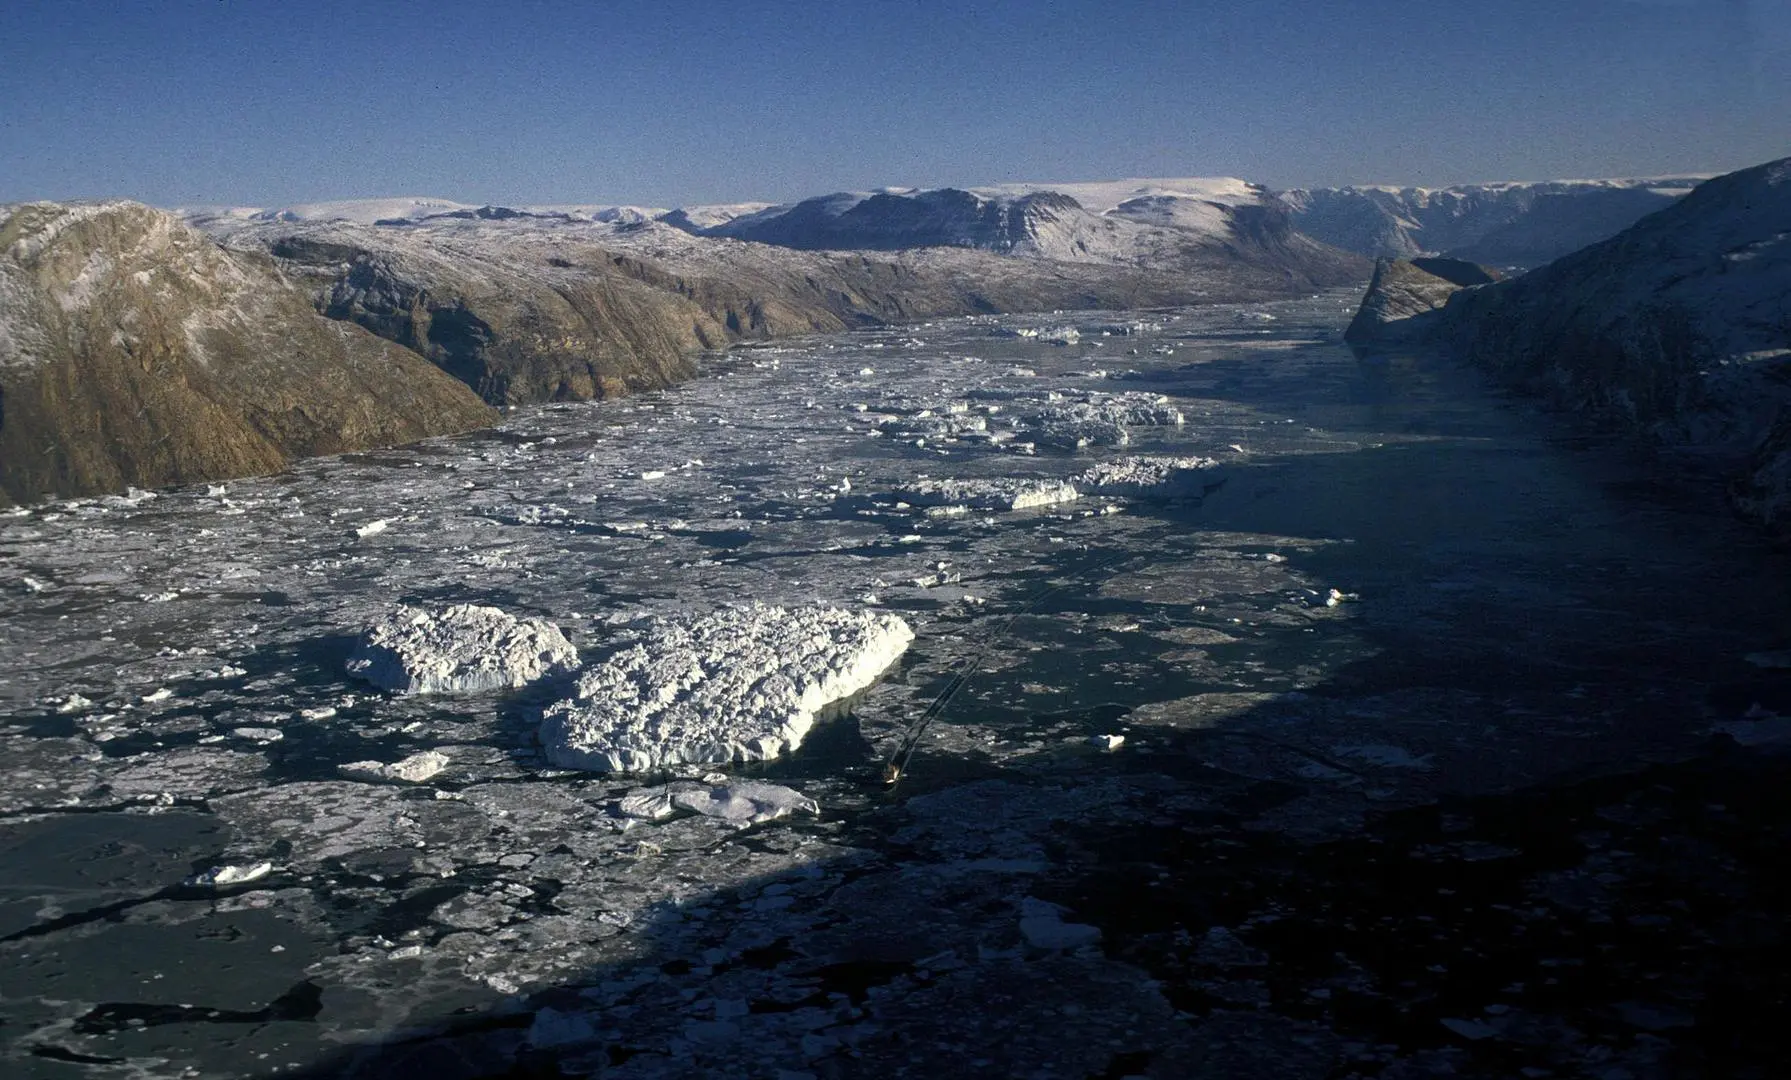 фьорд Нордвестфьорд (Nordvestfjord), який входить до складу Скорсбі – самої великої системи фьордів у світі, що лежить на сході Гренландії. Фото Hannes Grobe